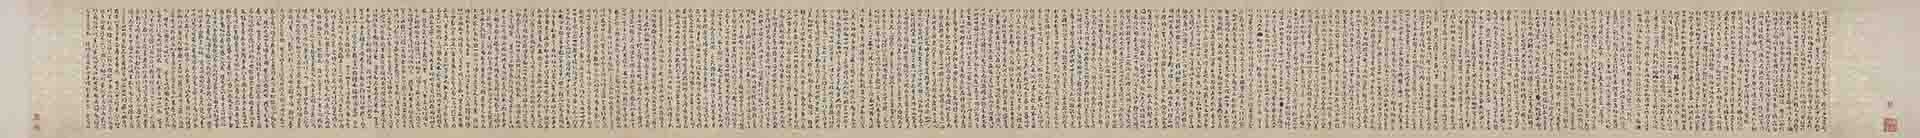 唐人草书法华经玄赞卷纸本28.4x373.2cm